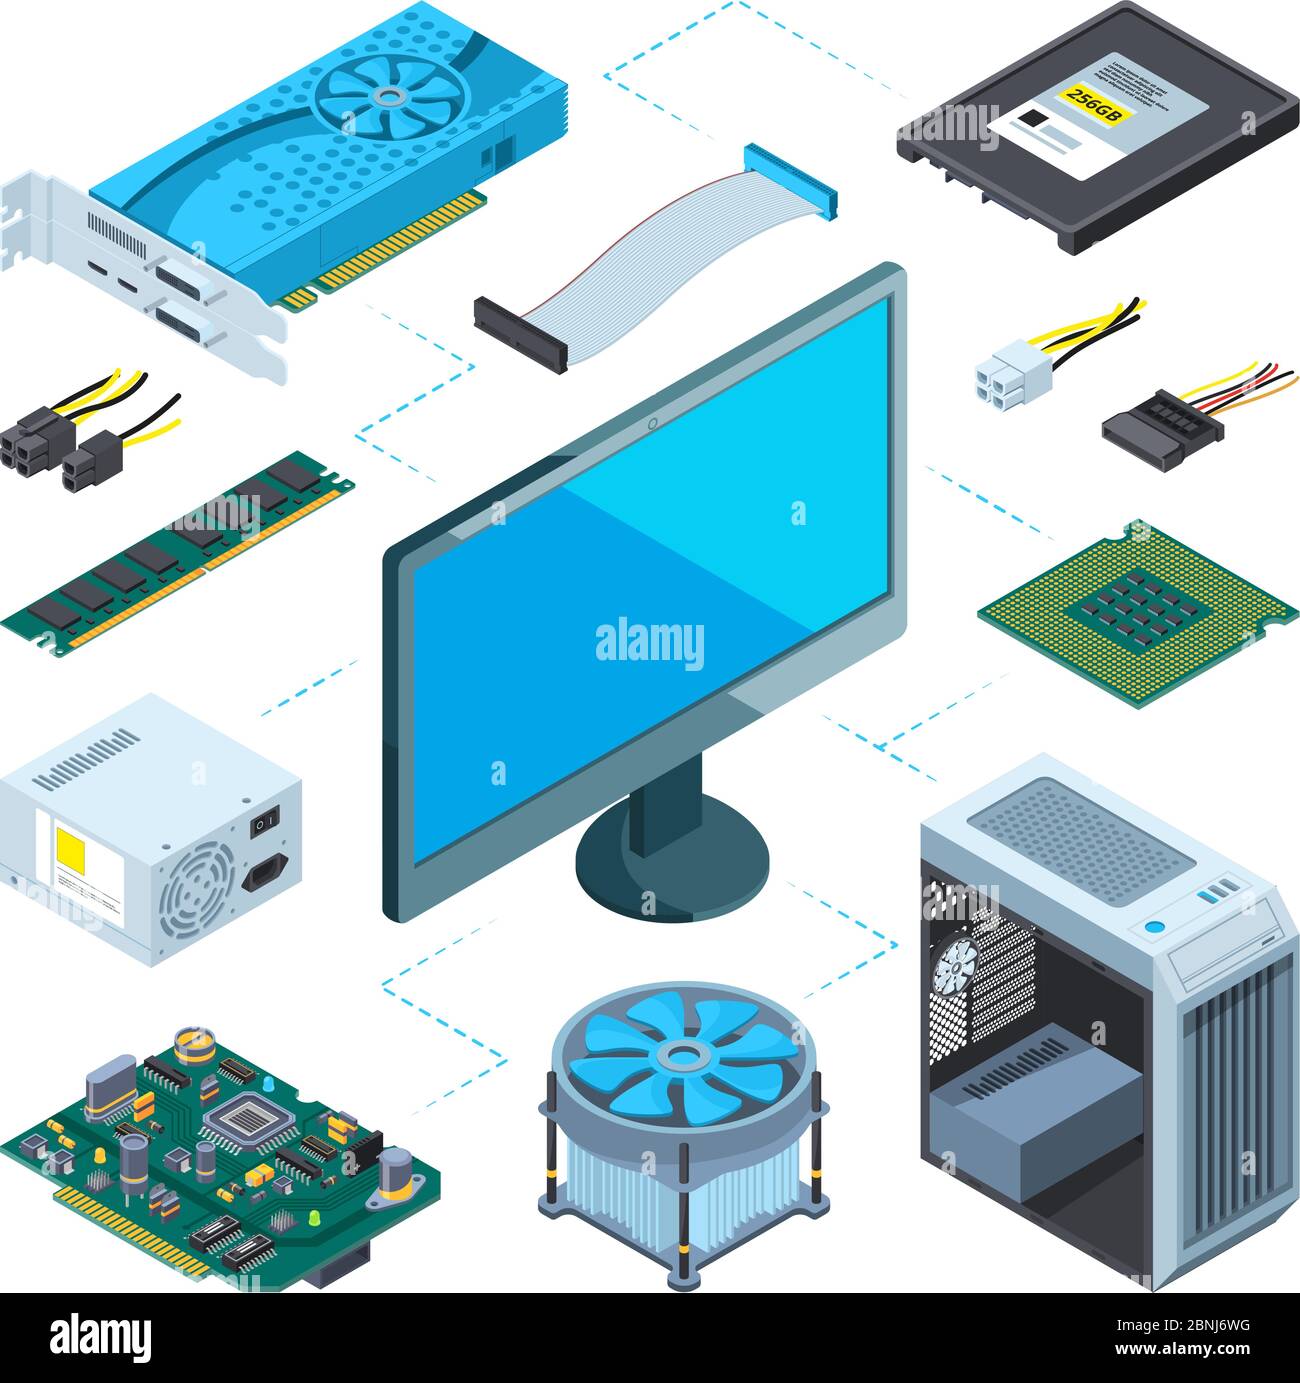 Illustrazioni isometriche dell'hardware del computer. Set di immagini vettoriali Illustrazione Vettoriale